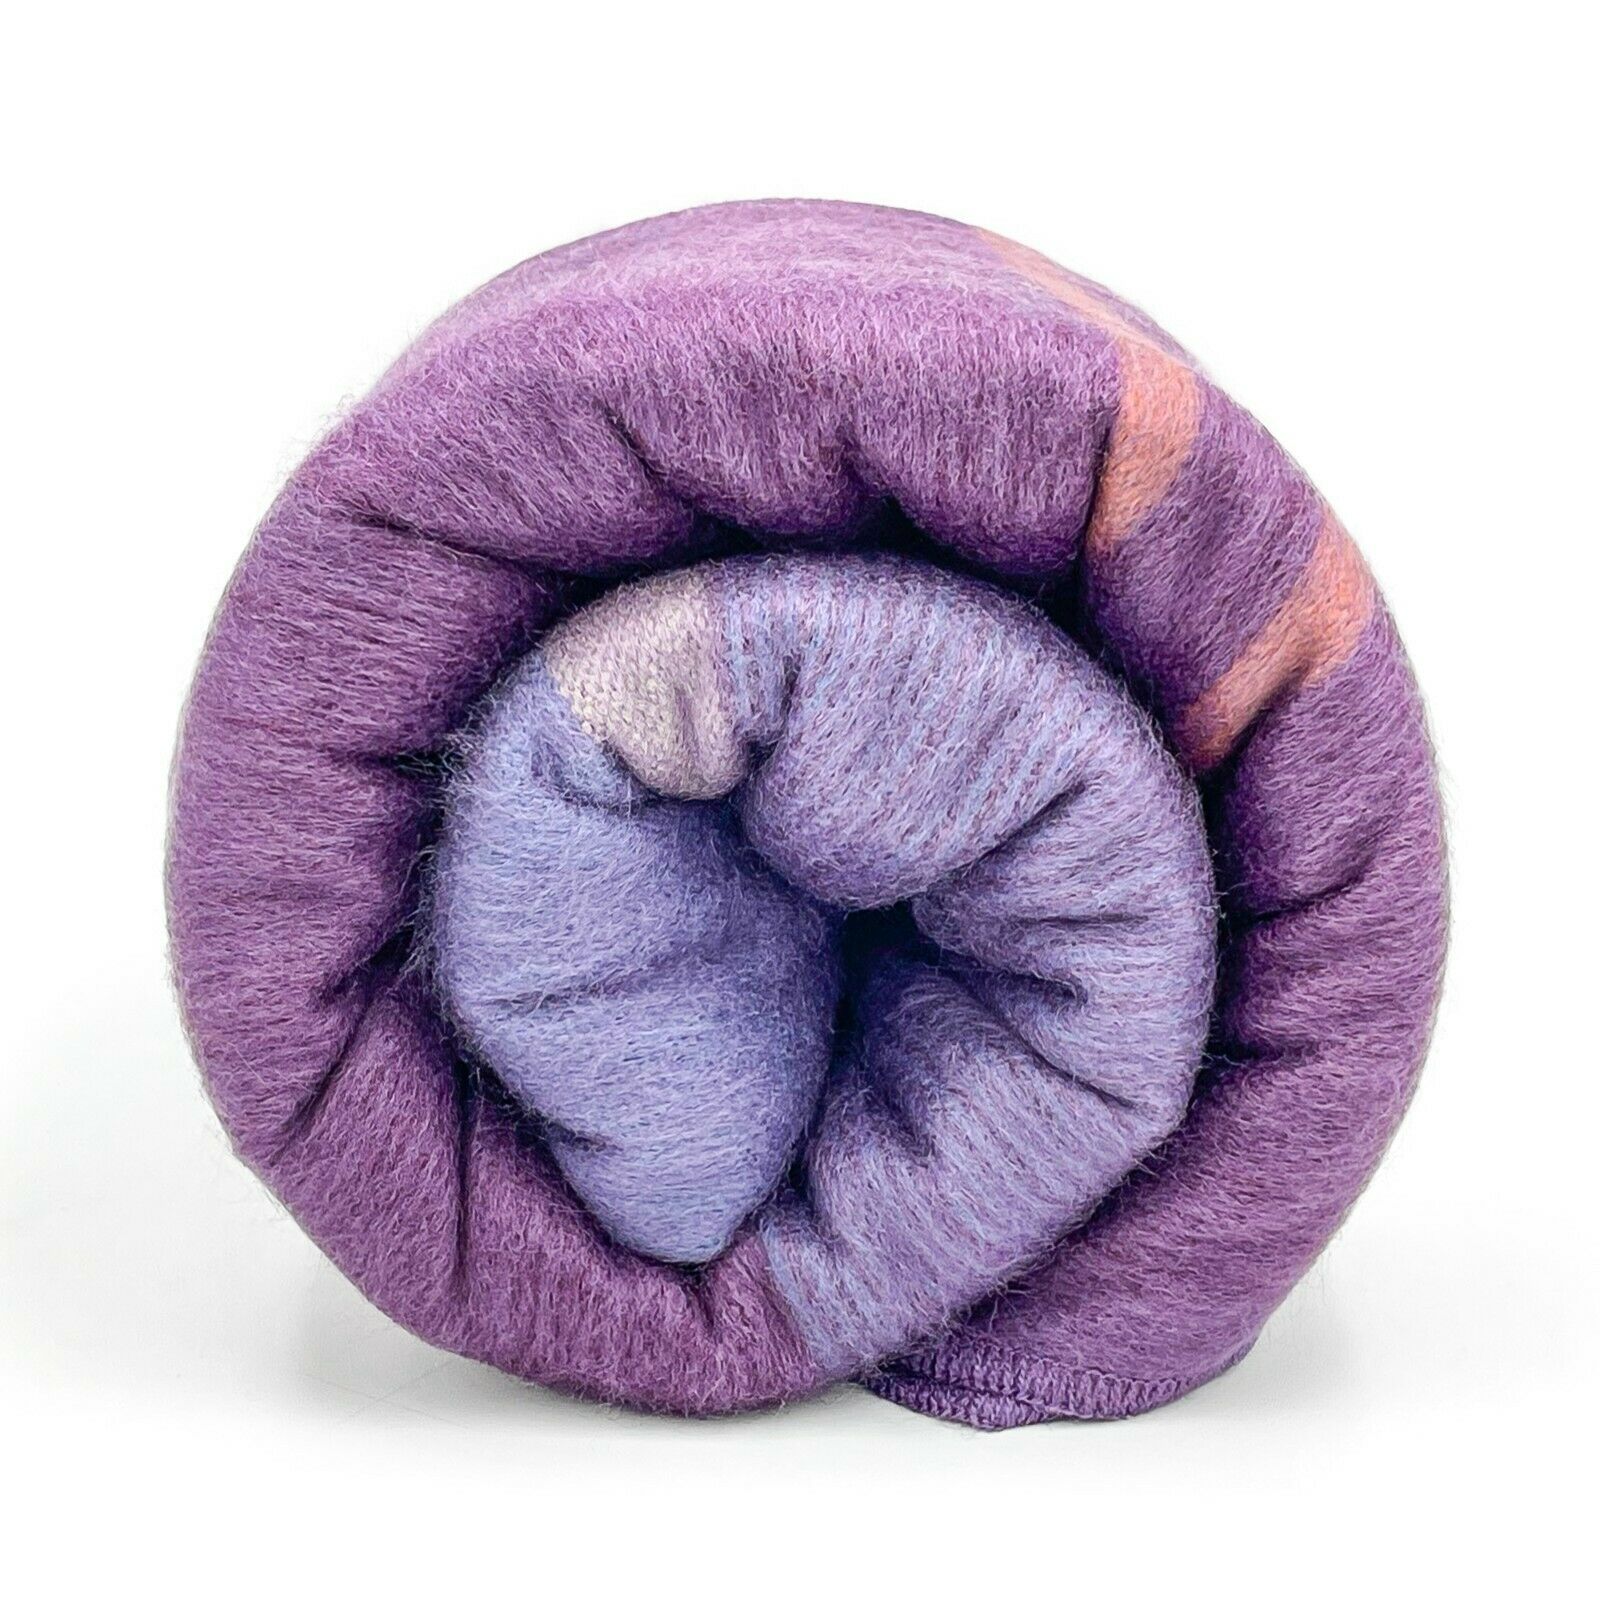 Chuquipata - Baby Alpaca Wool Throw Blanket / Sofa Cover - Queen 96" x 68" - striped purple